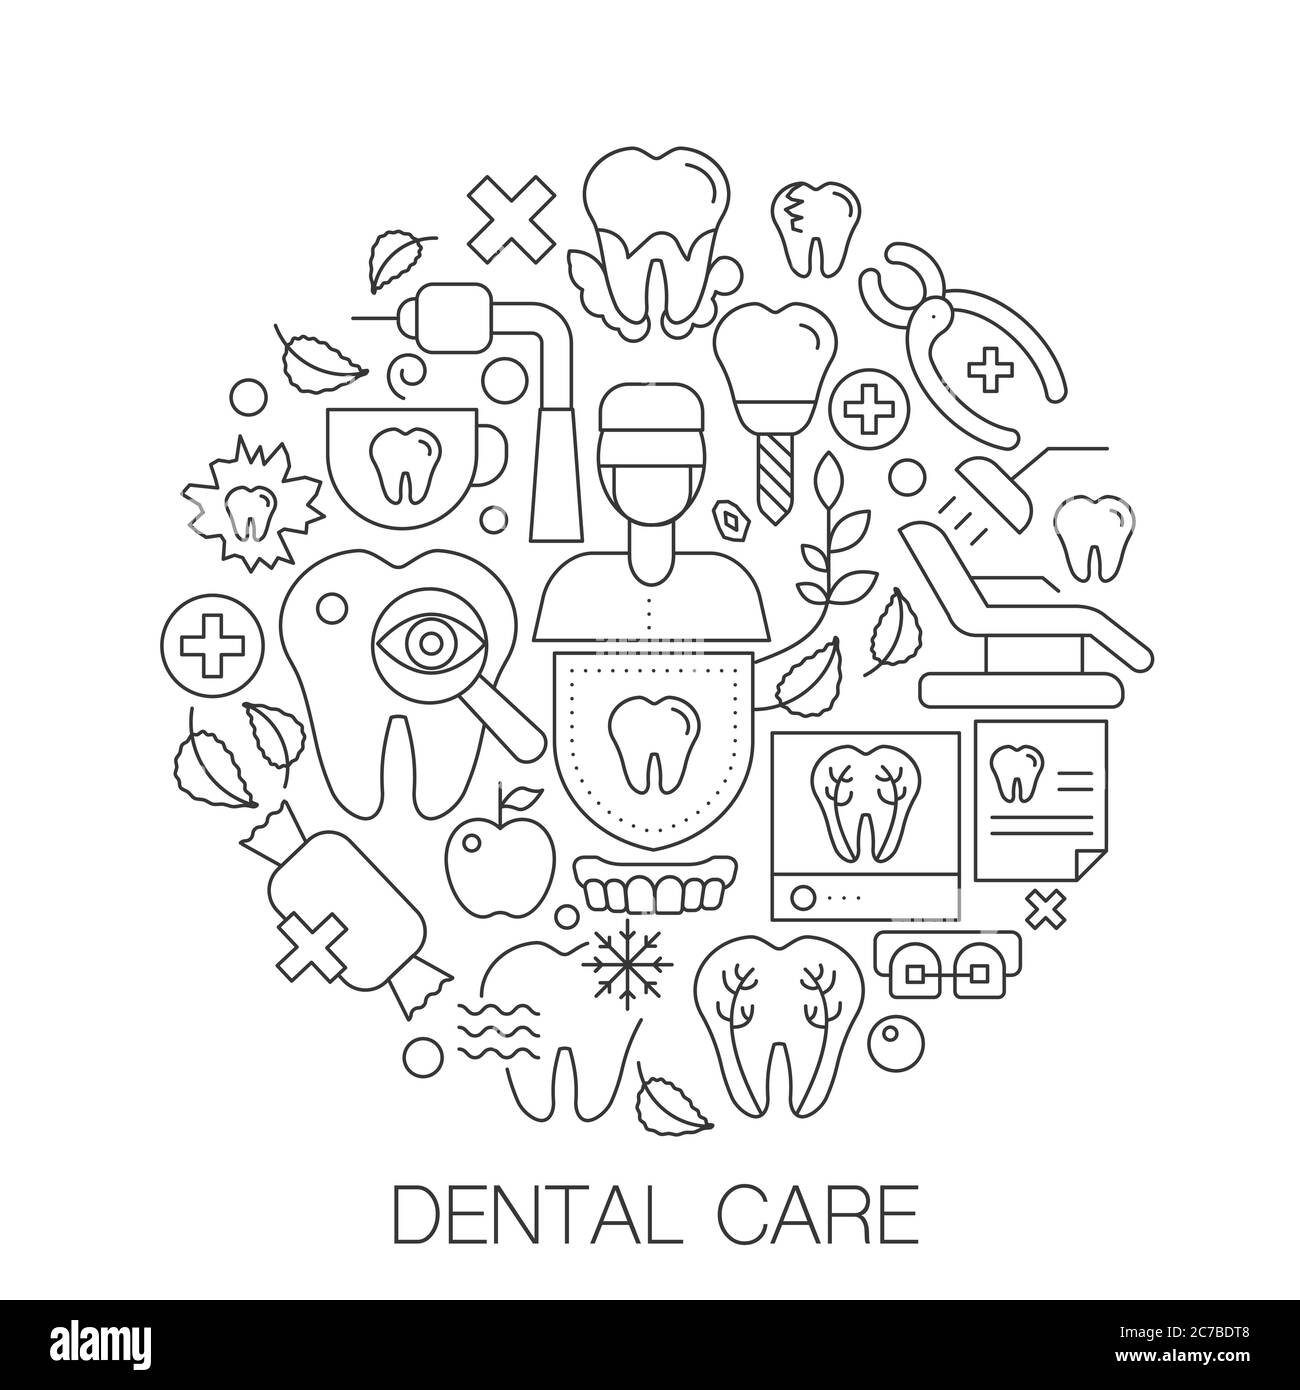 Soins dentaires en cercle - illustration de la ligne conceptuelle pour la couverture, l'emblème, le badge. Icônes de traits fins de soins dentaires Illustration de Vecteur